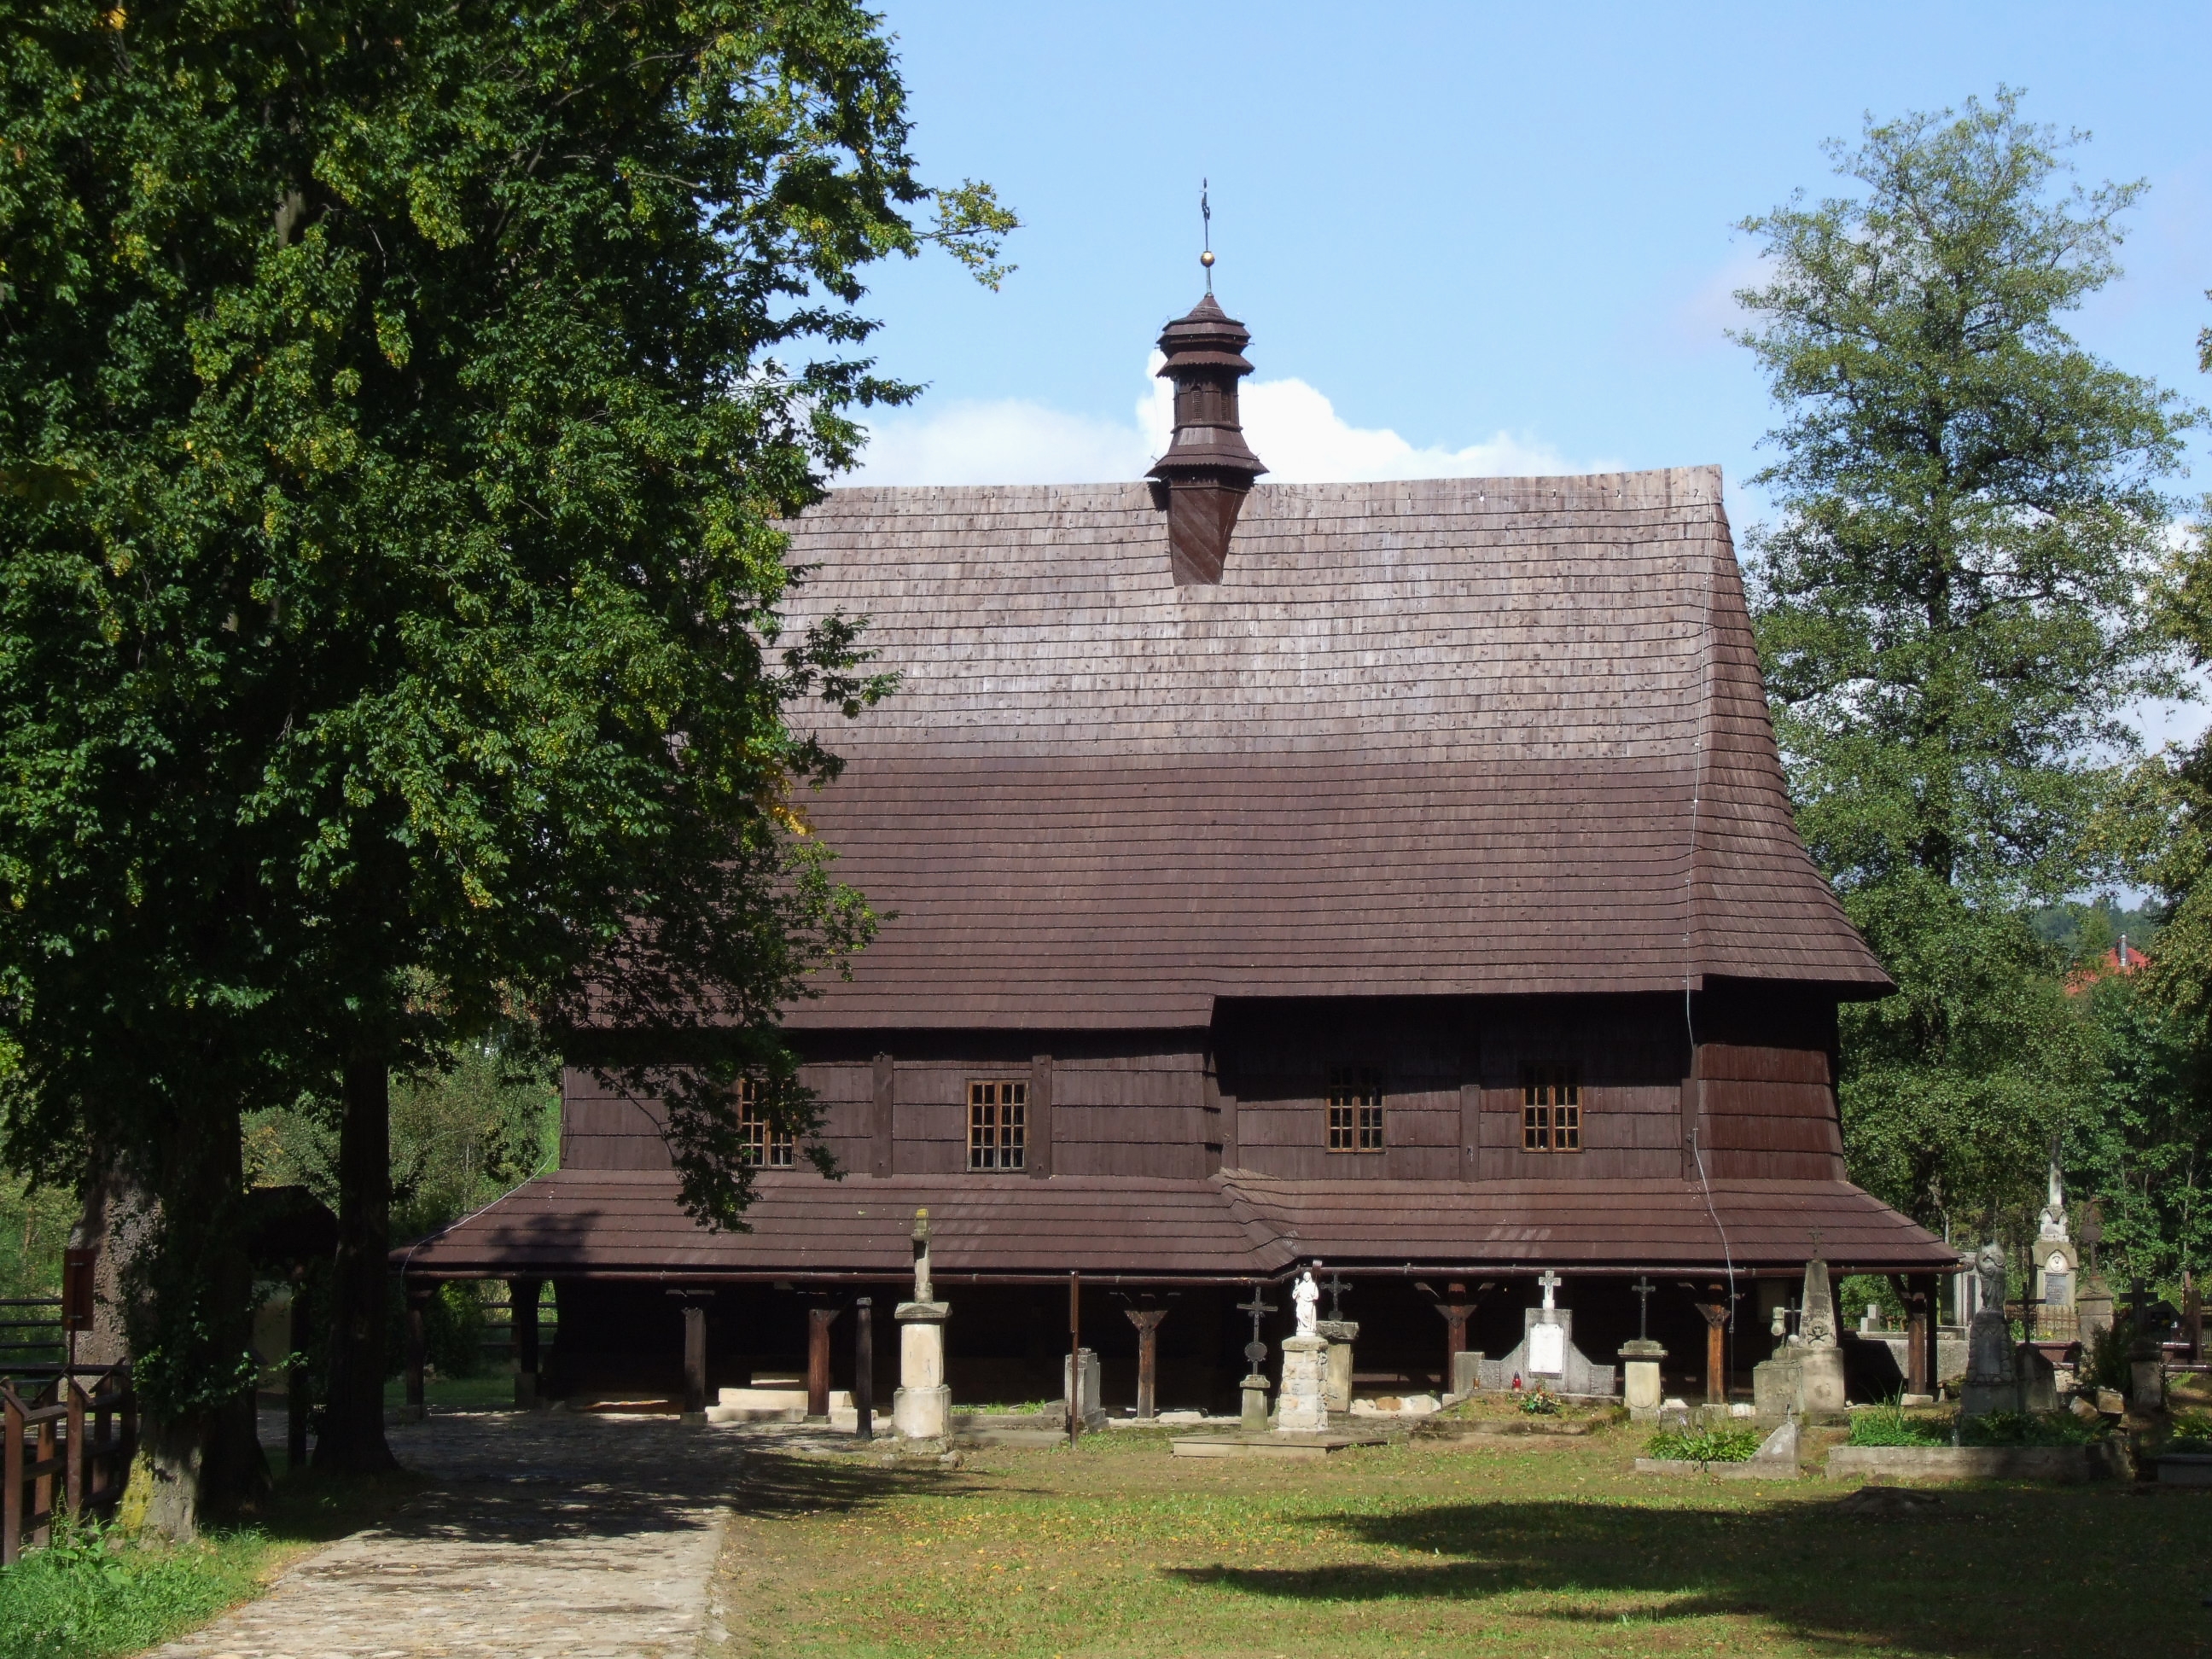 Wooden church in Lipnica Murowana